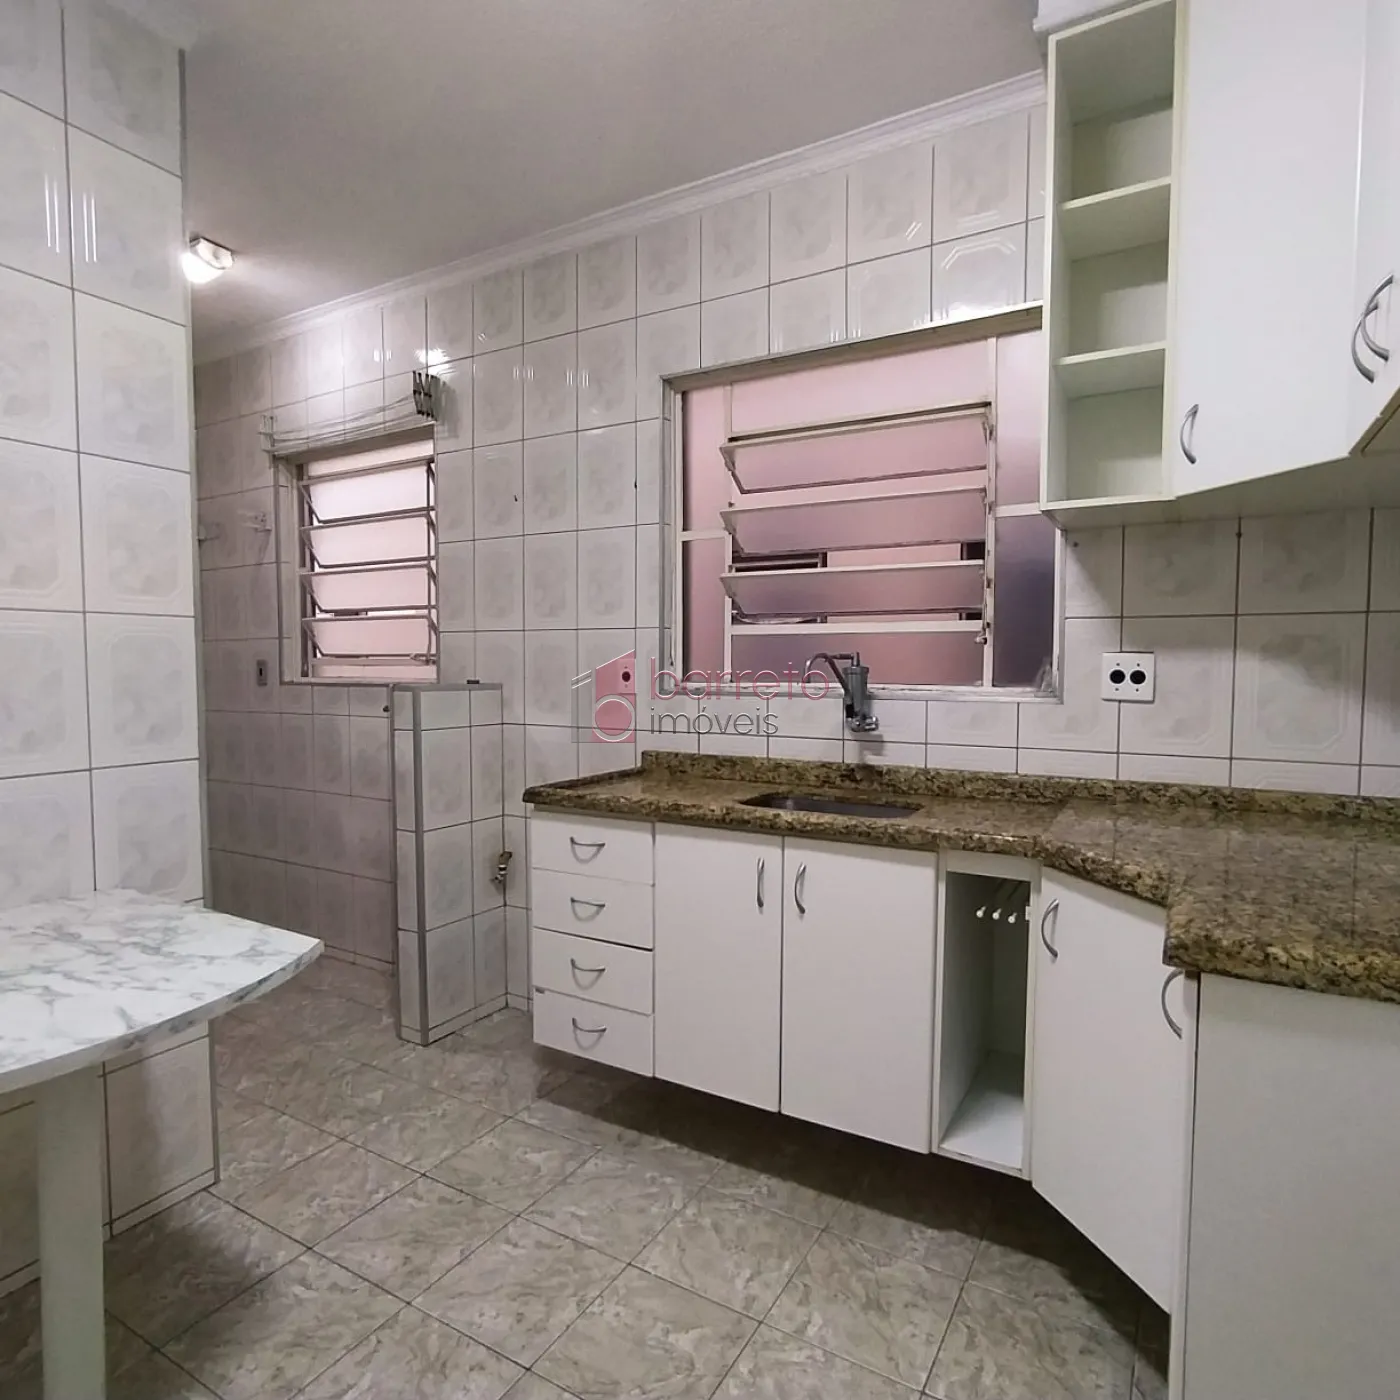 Comprar Apartamento / Padrão em Jundiaí R$ 290.000,00 - Foto 5